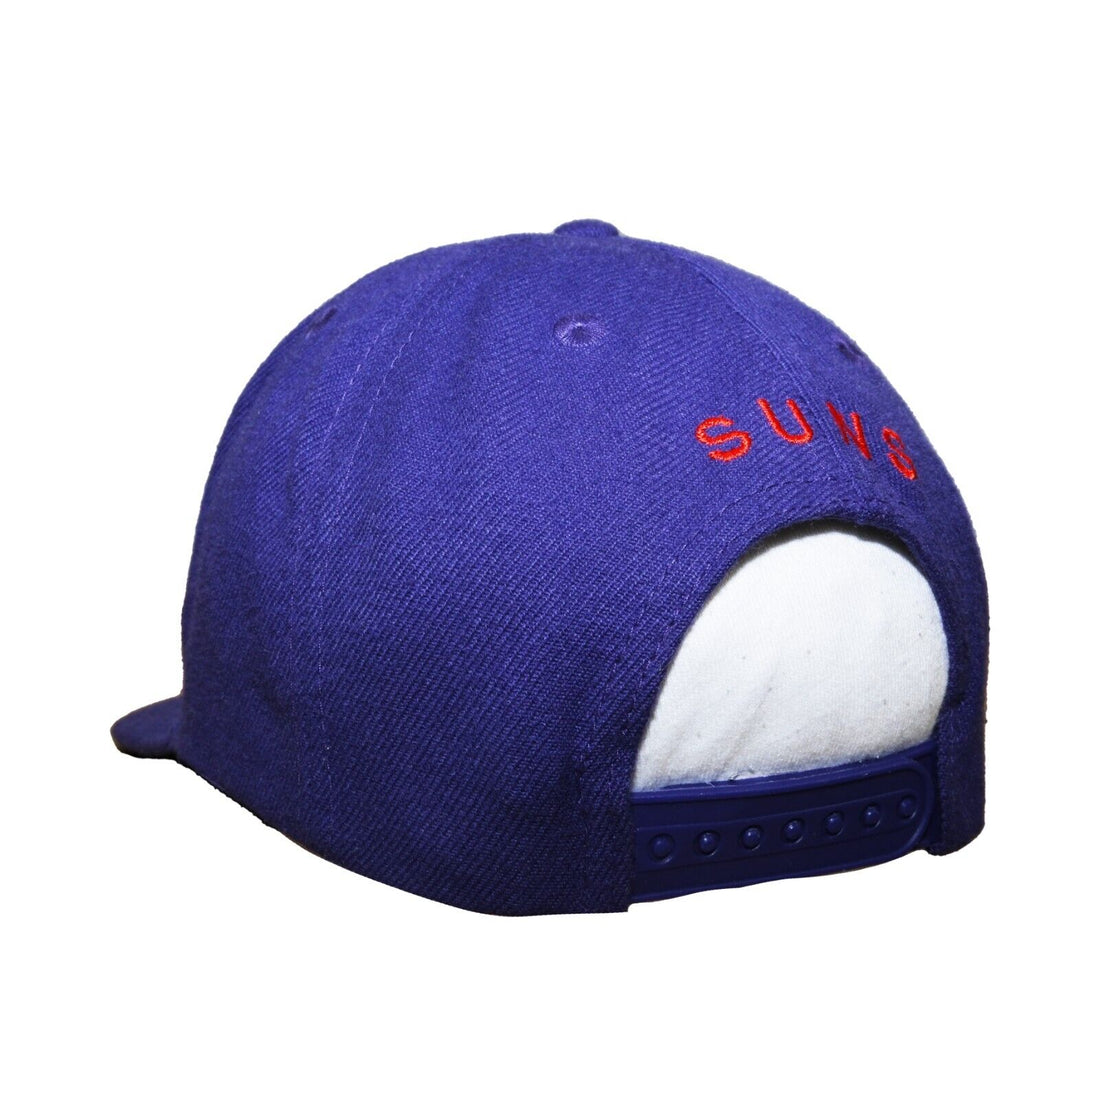 Vintage Phoenix Suns Wool Snapback Hat OSFA Purple 90s NBA